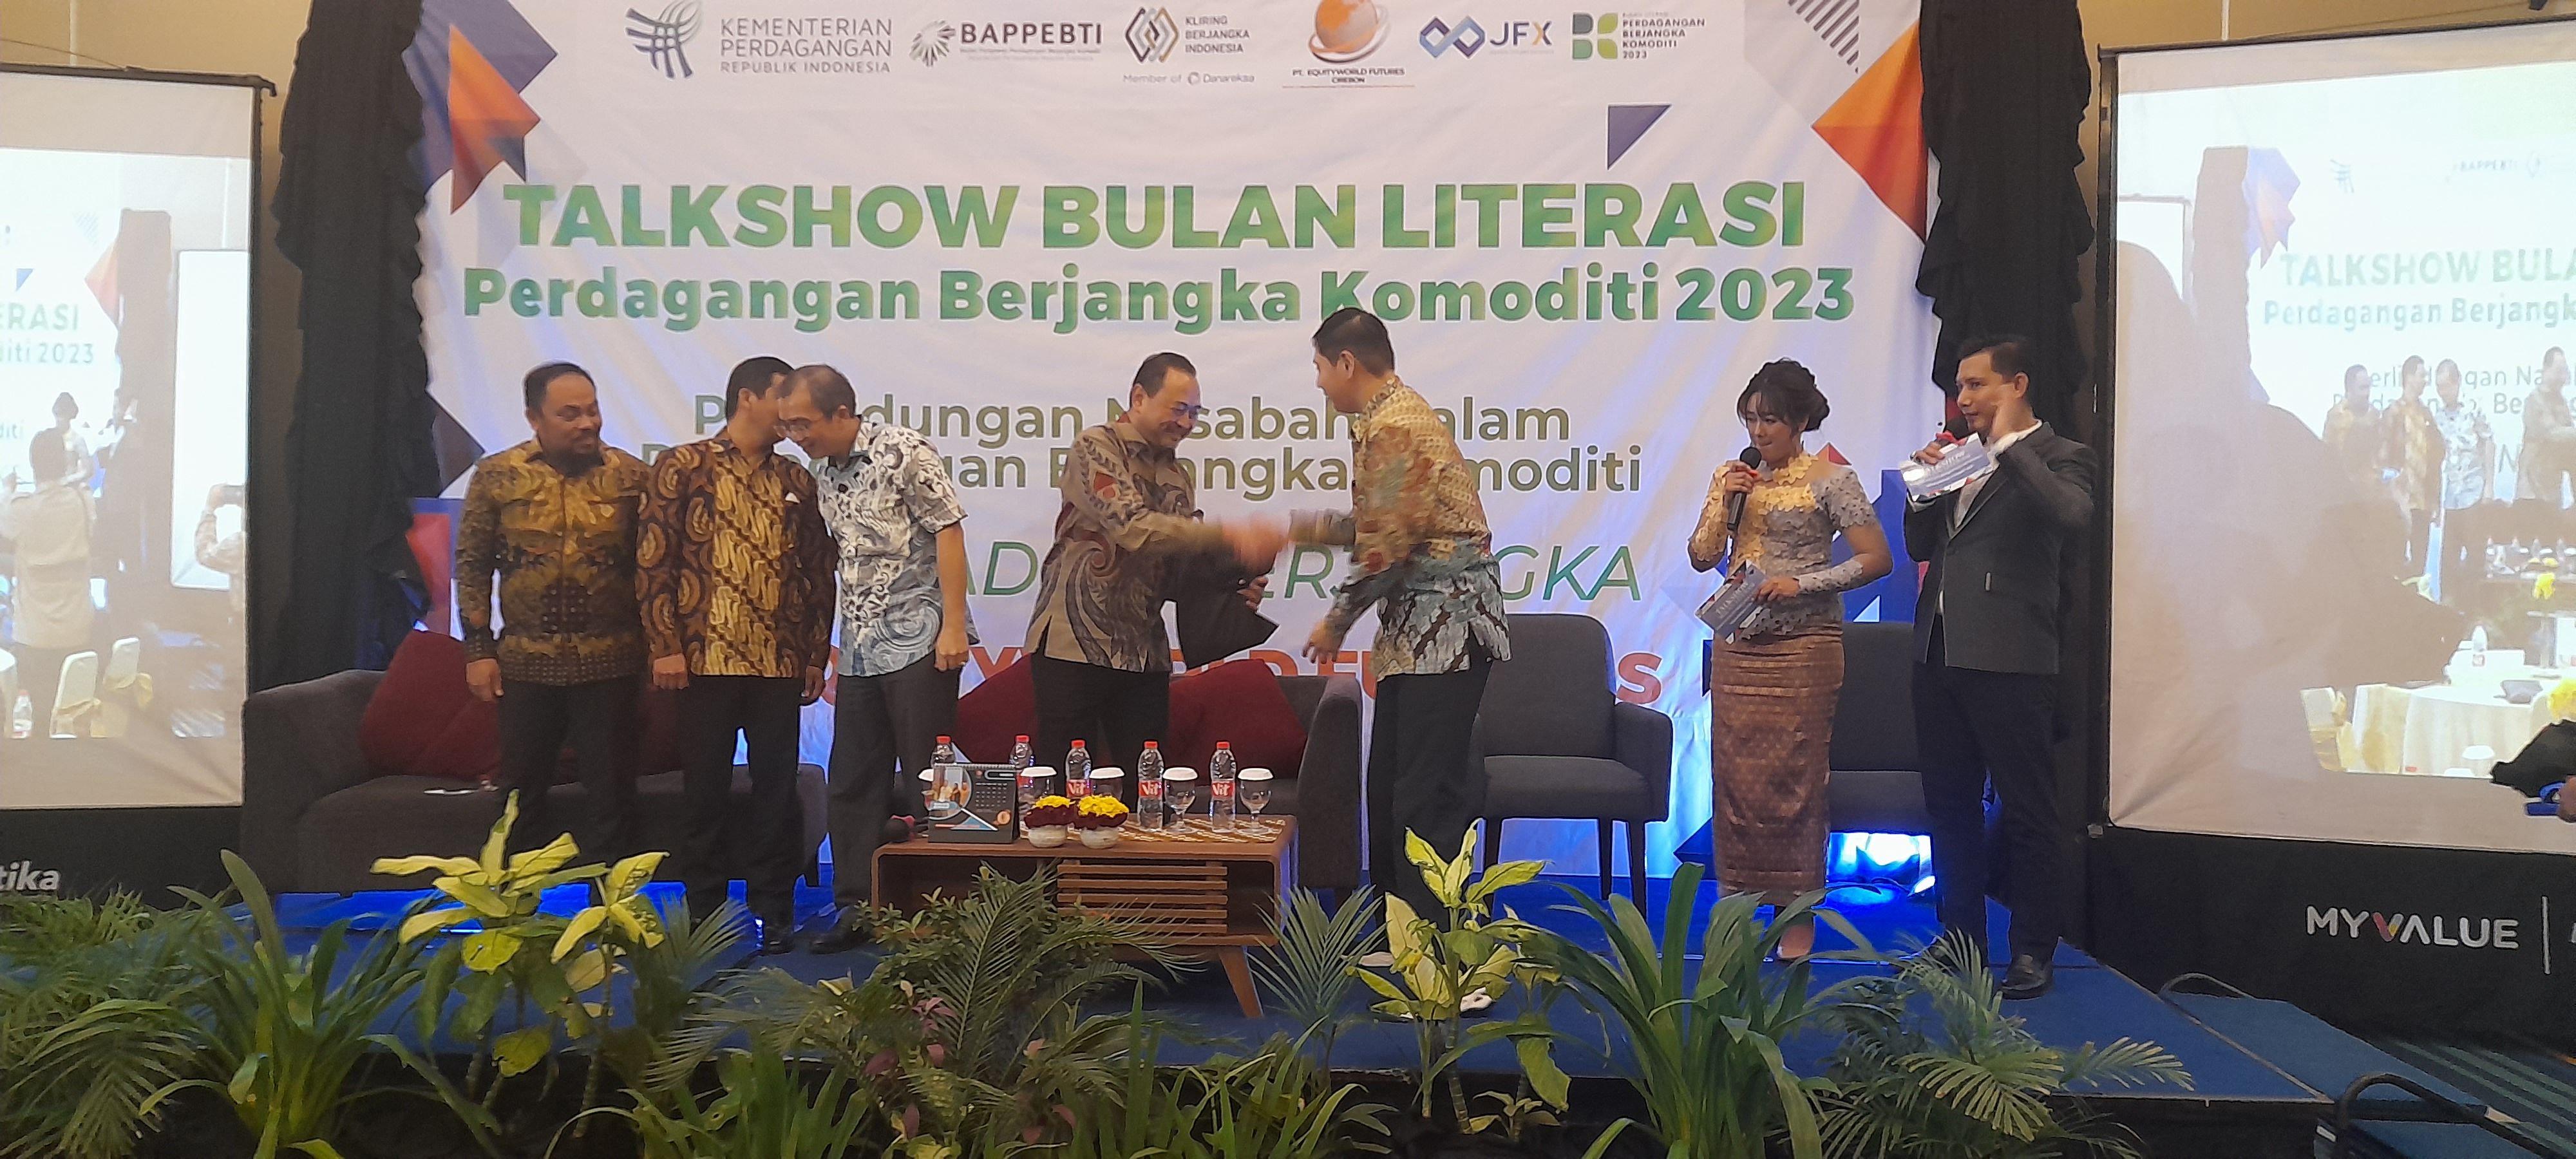 Pimpinan EWF Cirebon Ernest Firman menyerahkan cendramata kepada salah satu narasumber dalam acara talkshow Bulan Literasi Perdagangan Berjangka Komoditi di salah satu hotel di Pekalongan, Jawa Tengah (Jateng).